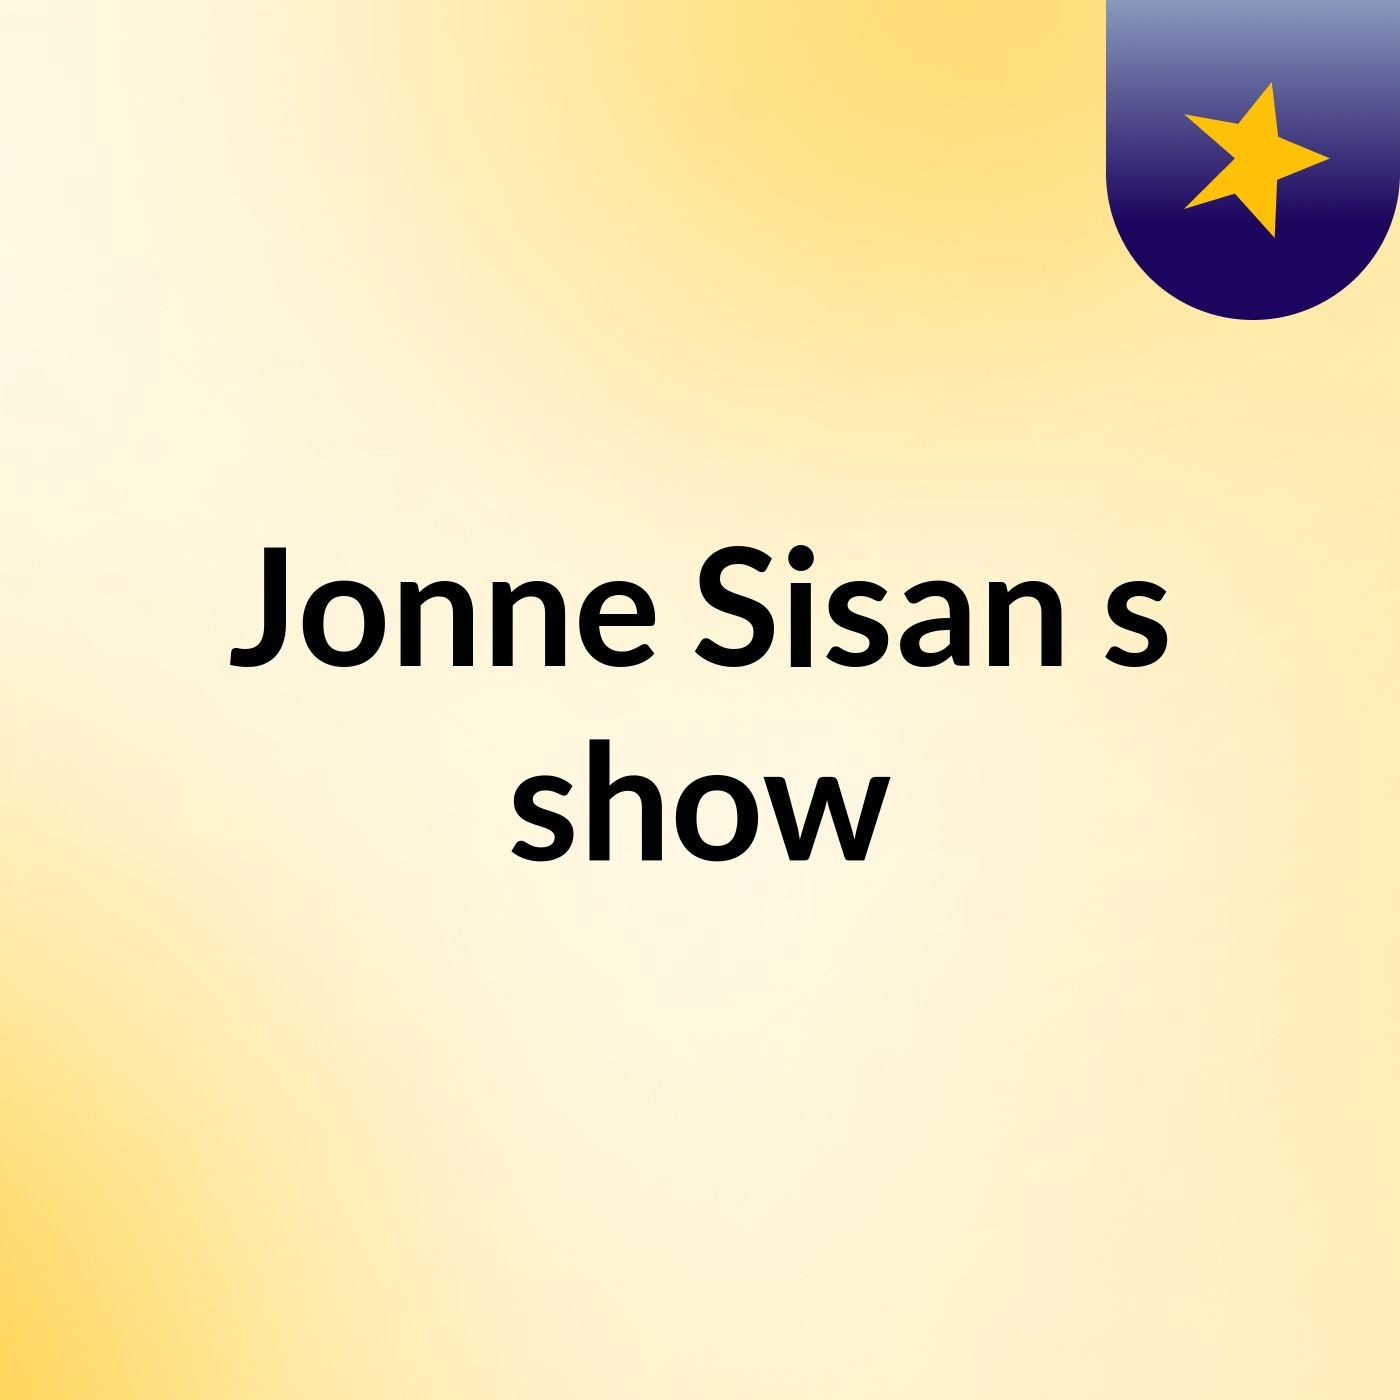 Jonne Sisan's show